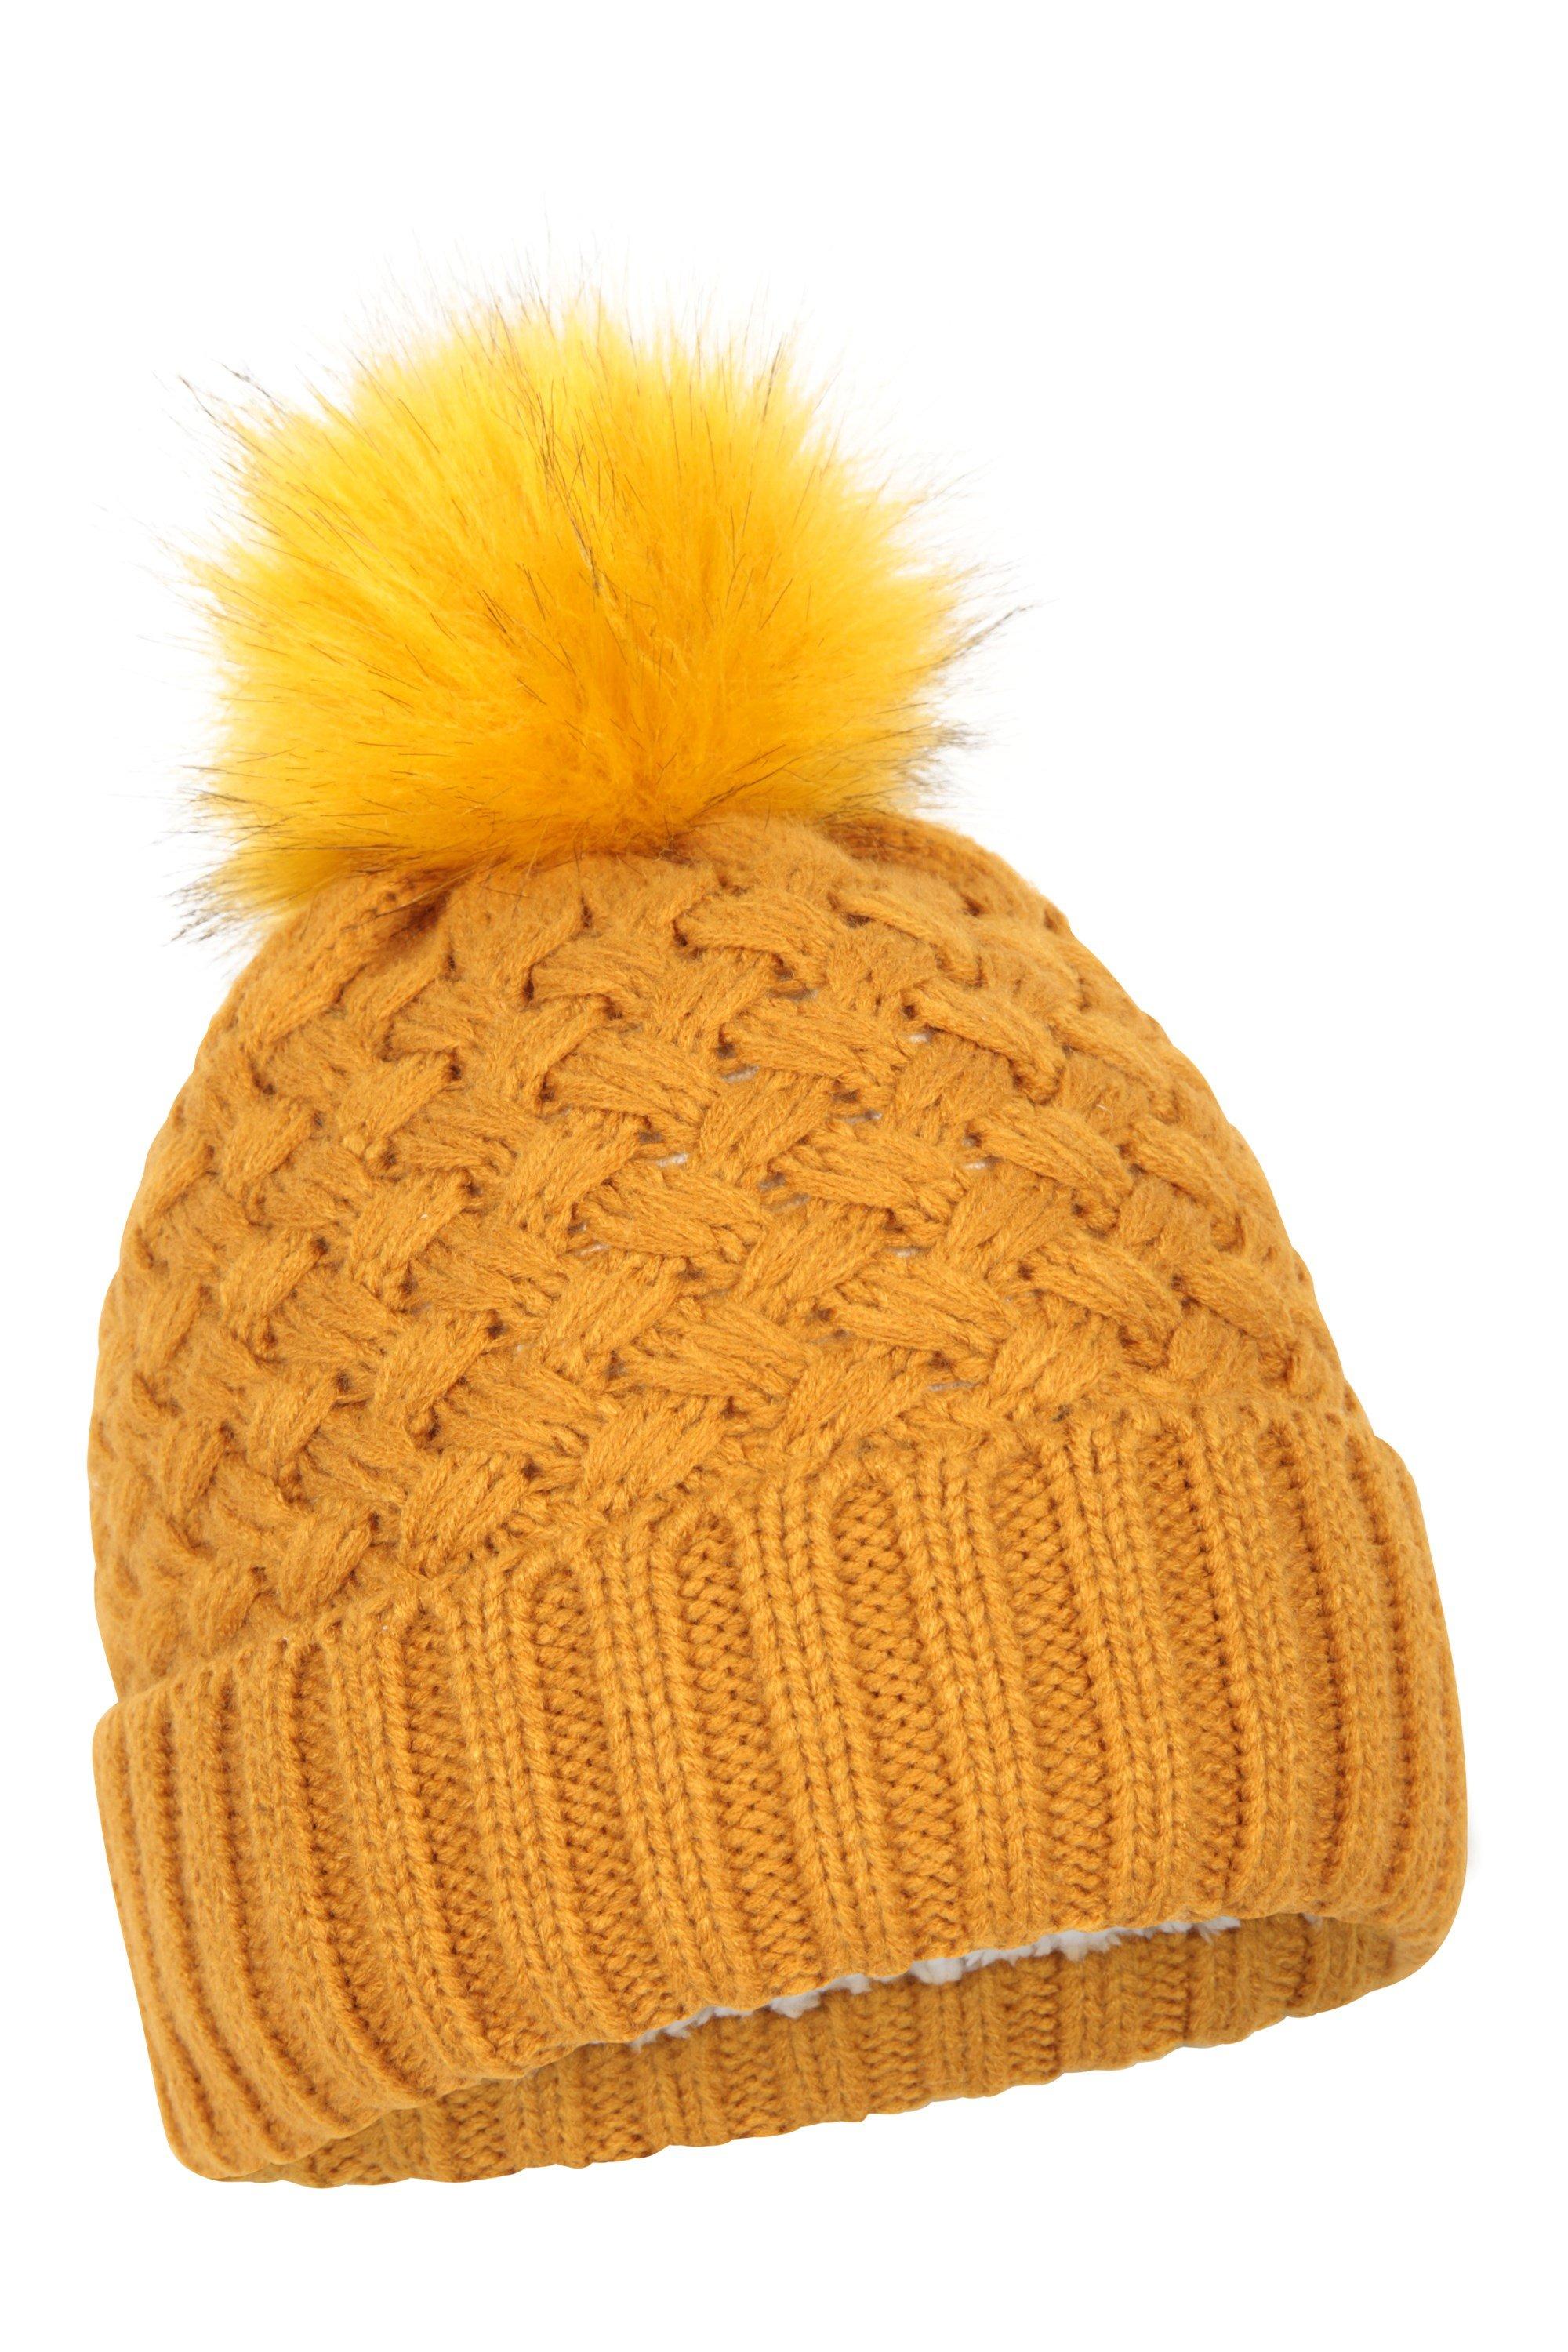 Зимняя лыжная шапка-бини с помпоном на меховой подкладке Mountain Warehouse, желтый шапка бини женская крупной вязки цвет – пепельно серый